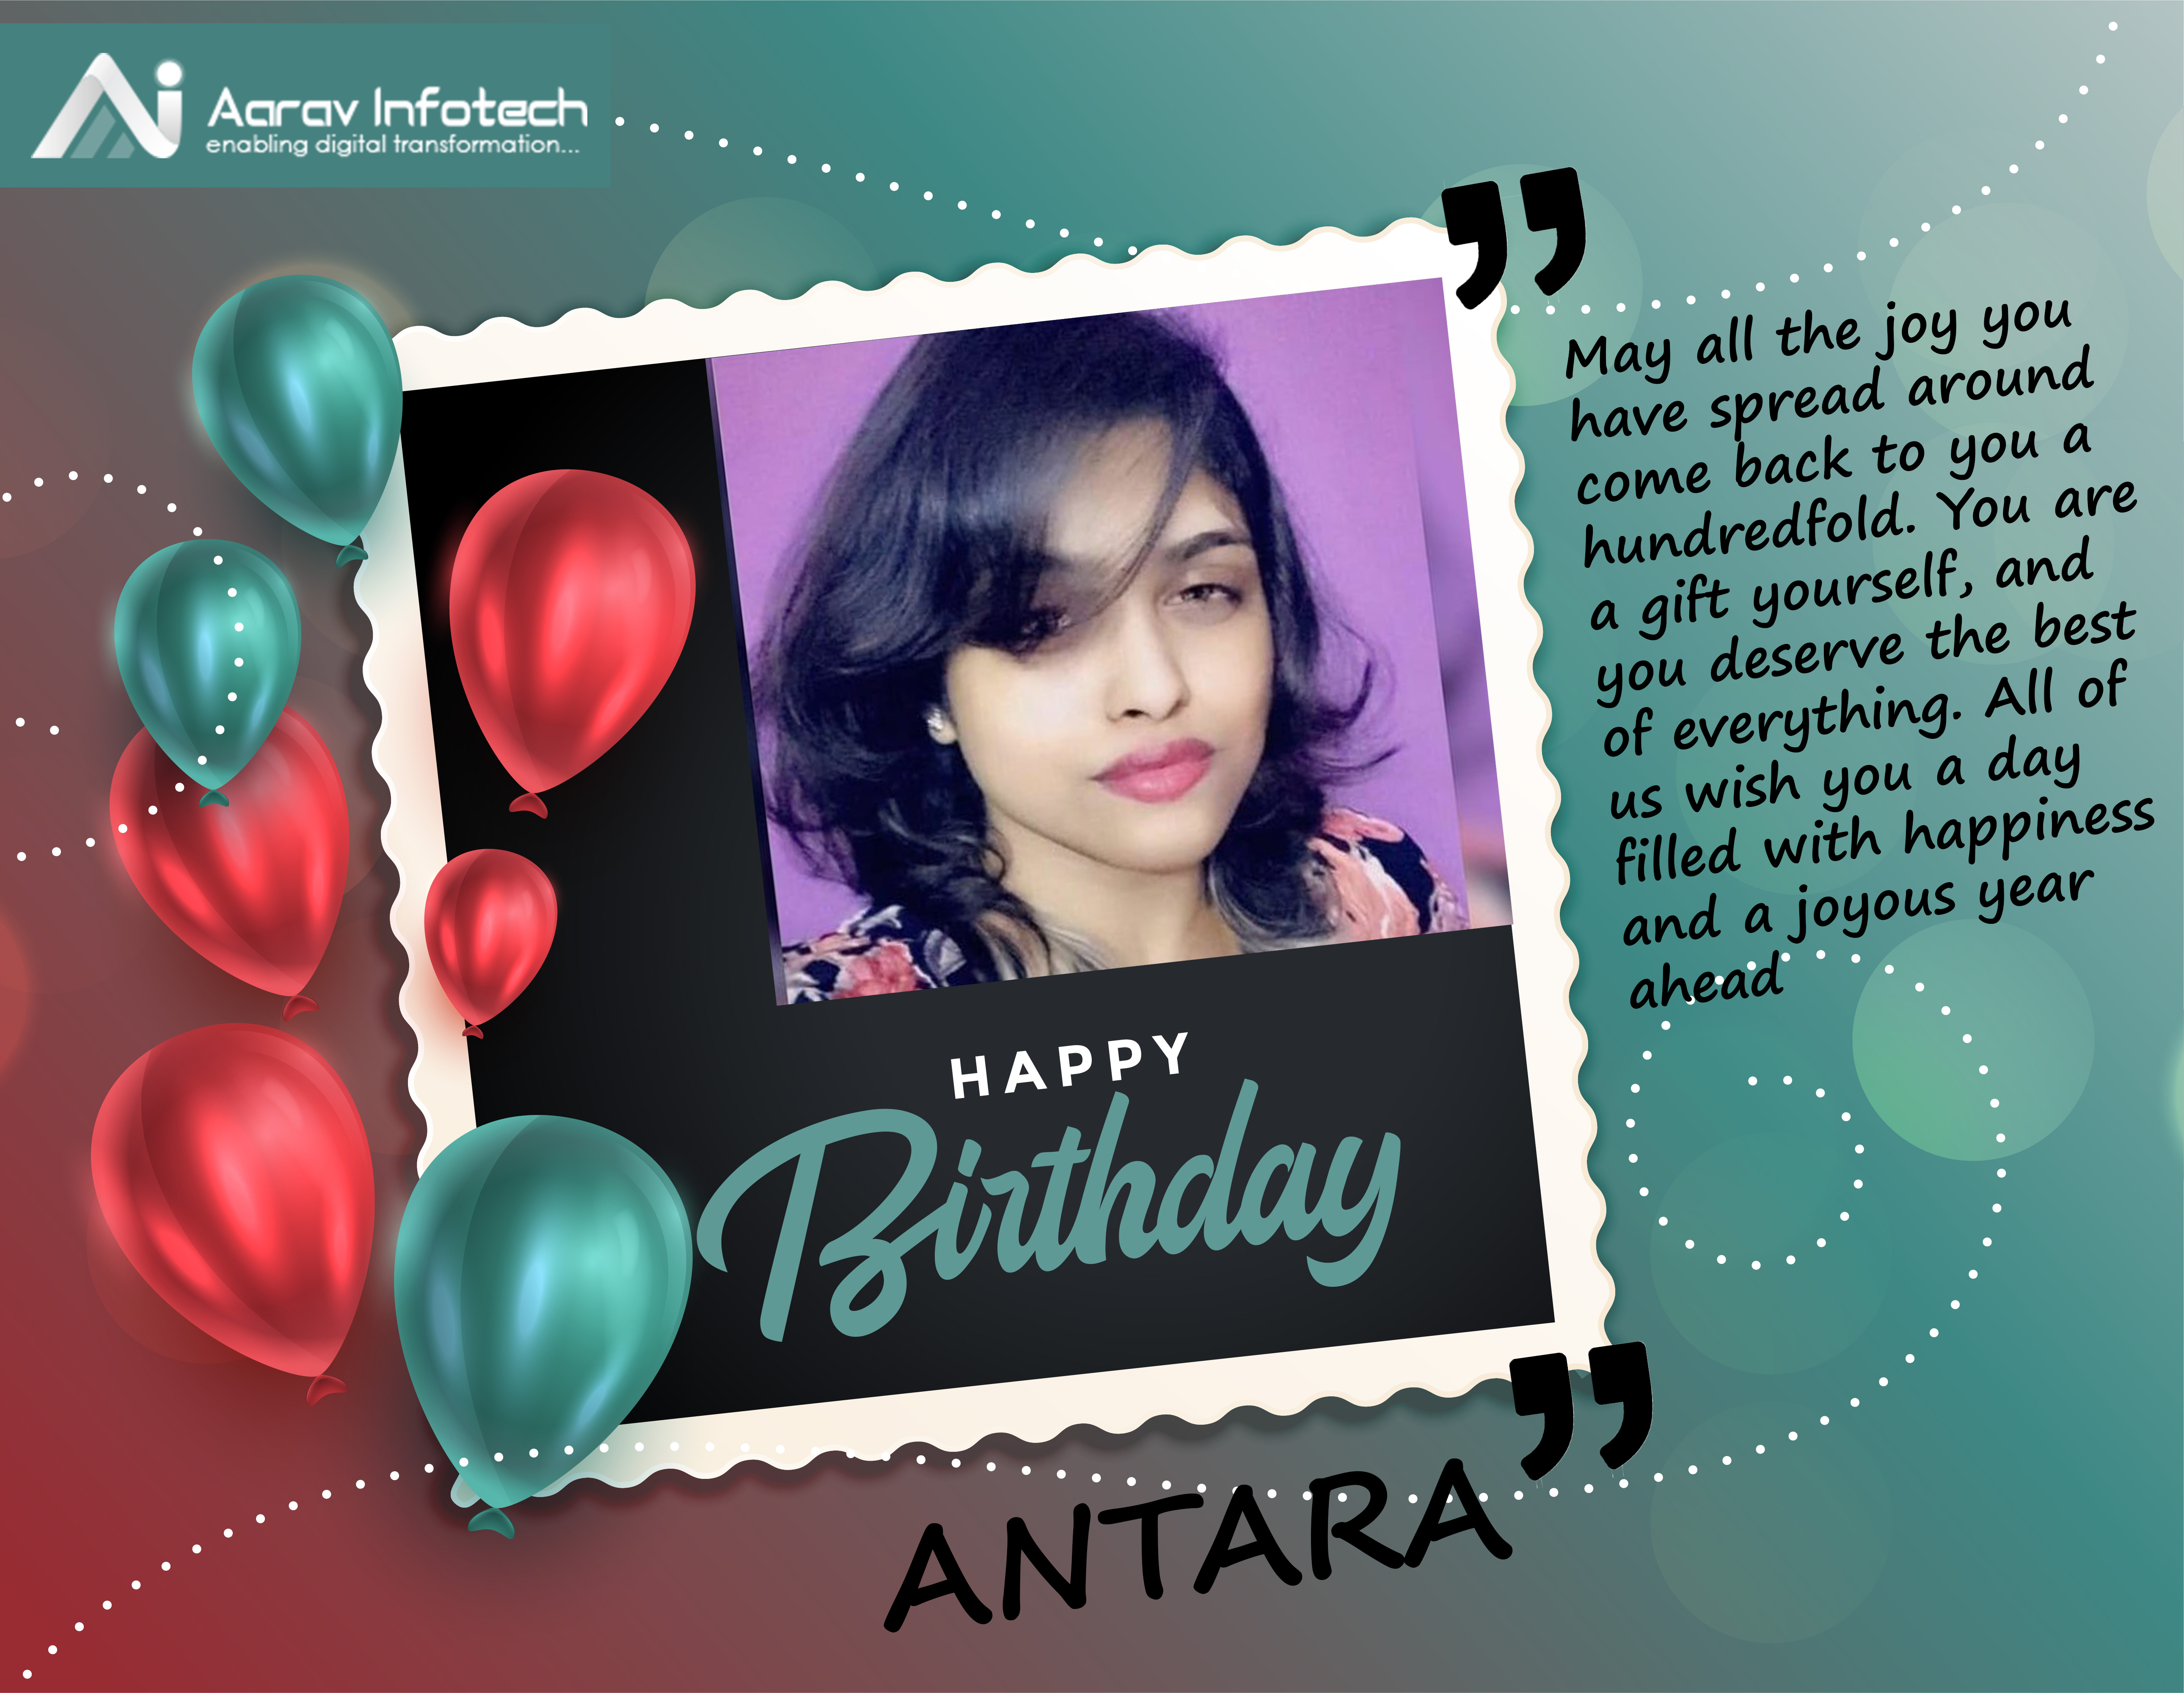 Wishing Antara